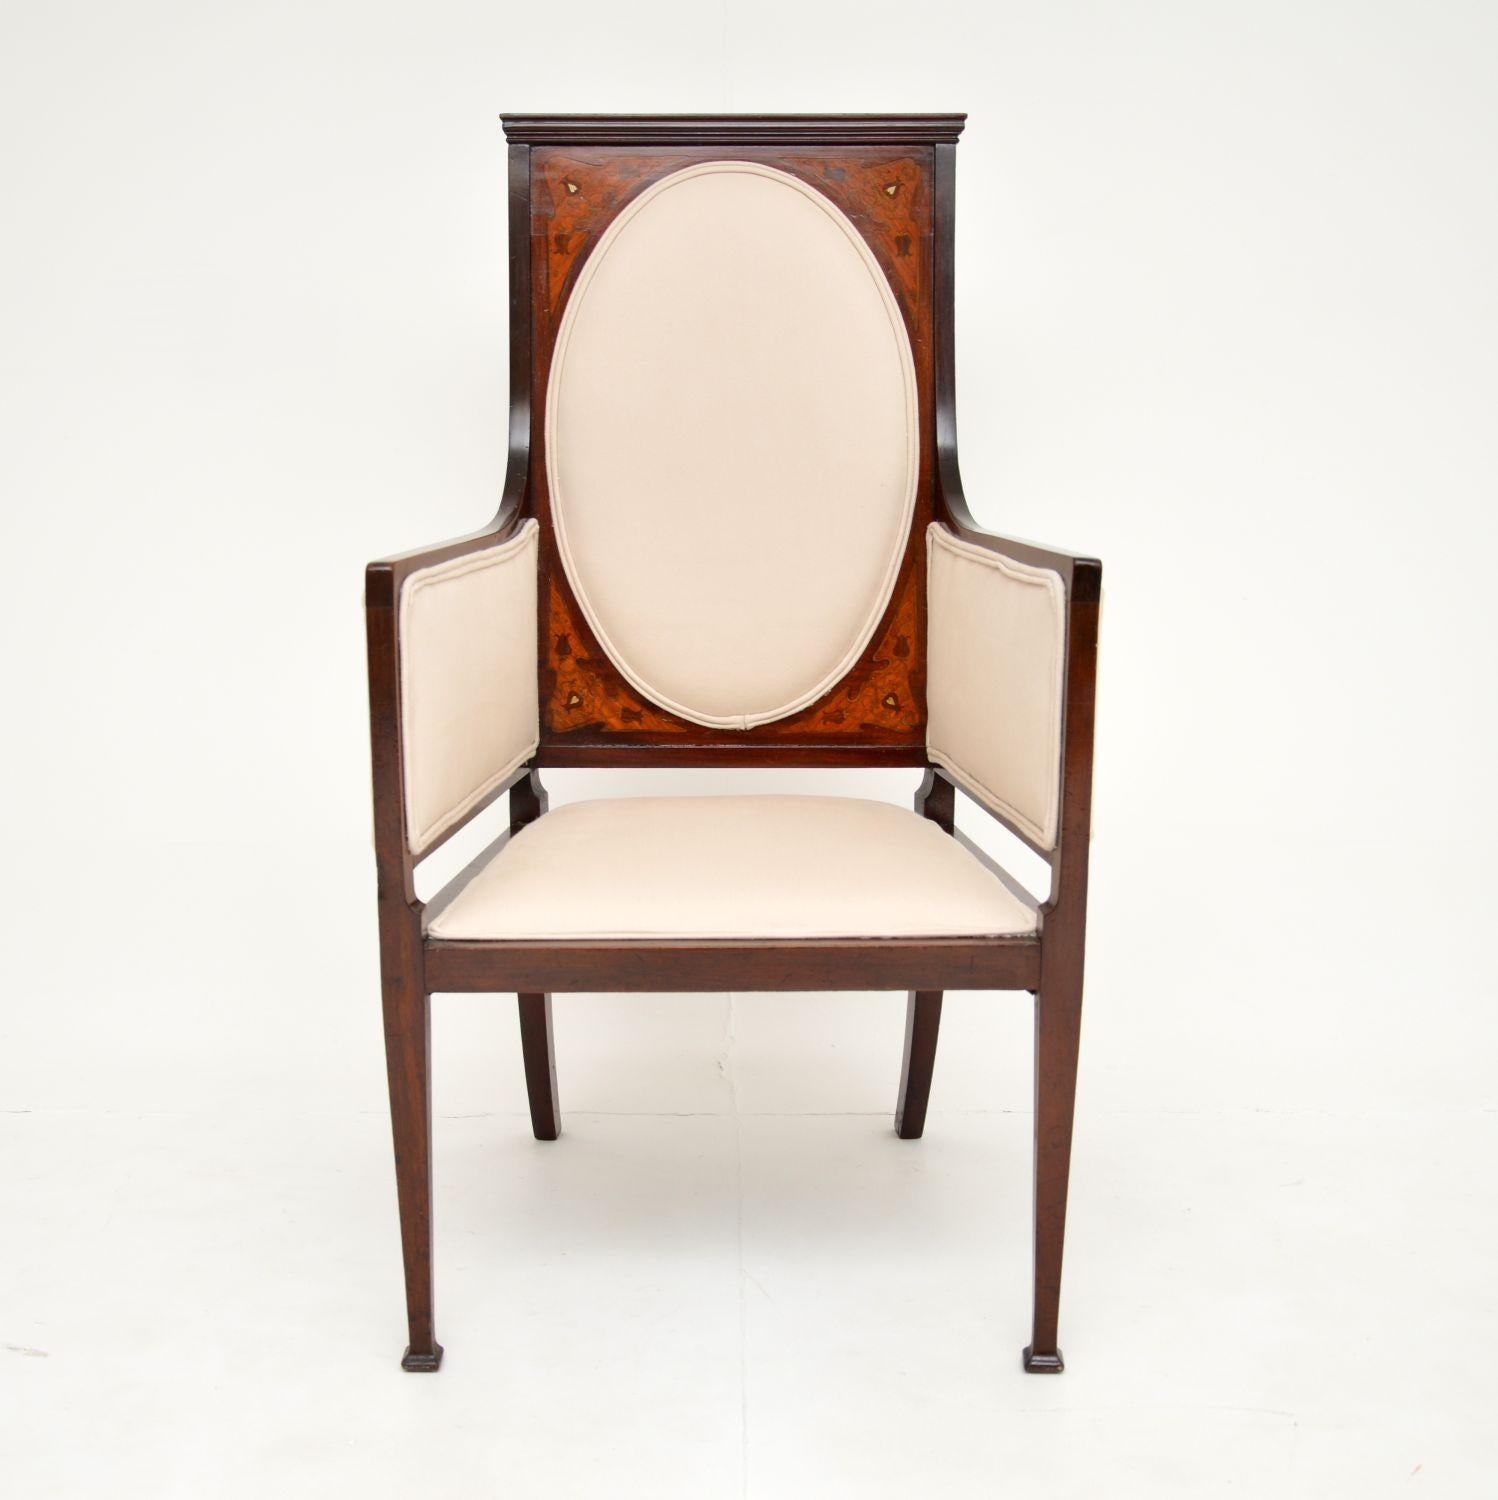 Ein feiner antiker Jugendstilsessel mit exquisiten Intarsienarbeiten. Diese wurde in England hergestellt und stammt aus der Zeit um 1890.

Dieser Sessel sieht aus wie ein typischer Artikel, der ursprünglich von Liberty of London verkauft worden